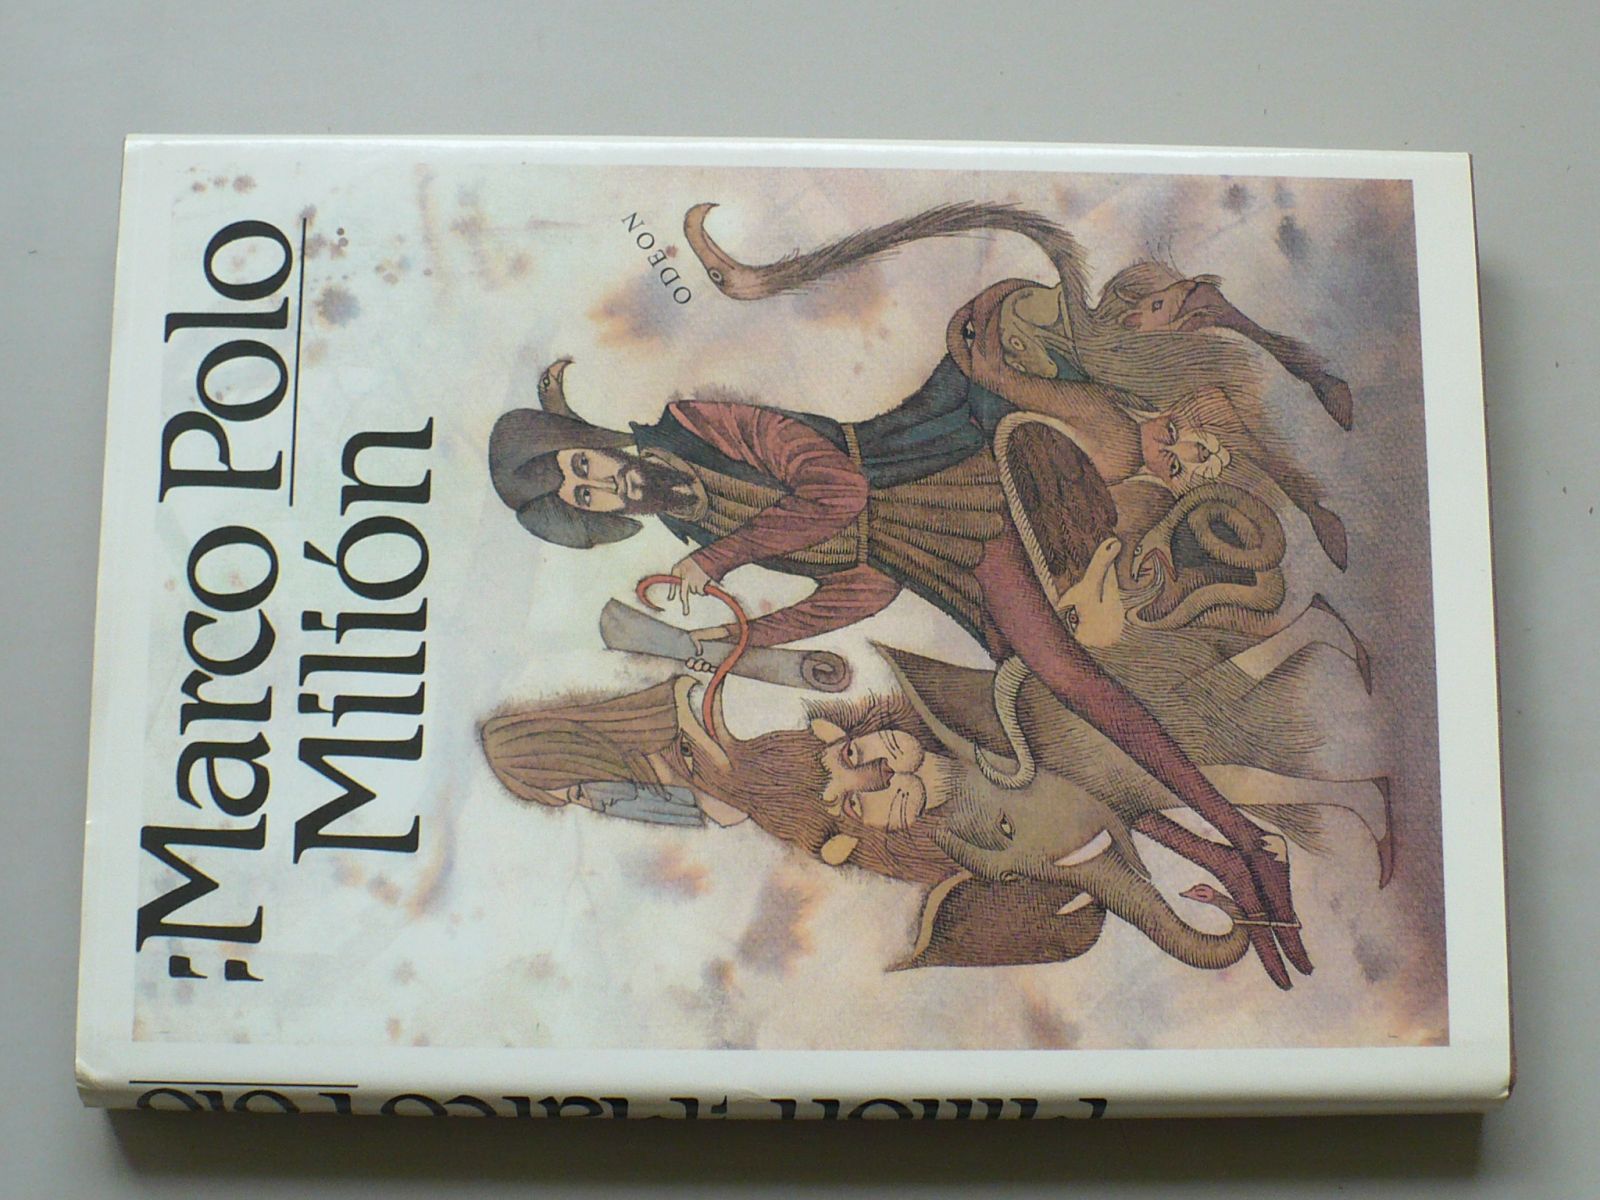 Marco Polo - Milión (1989) il. A. Born